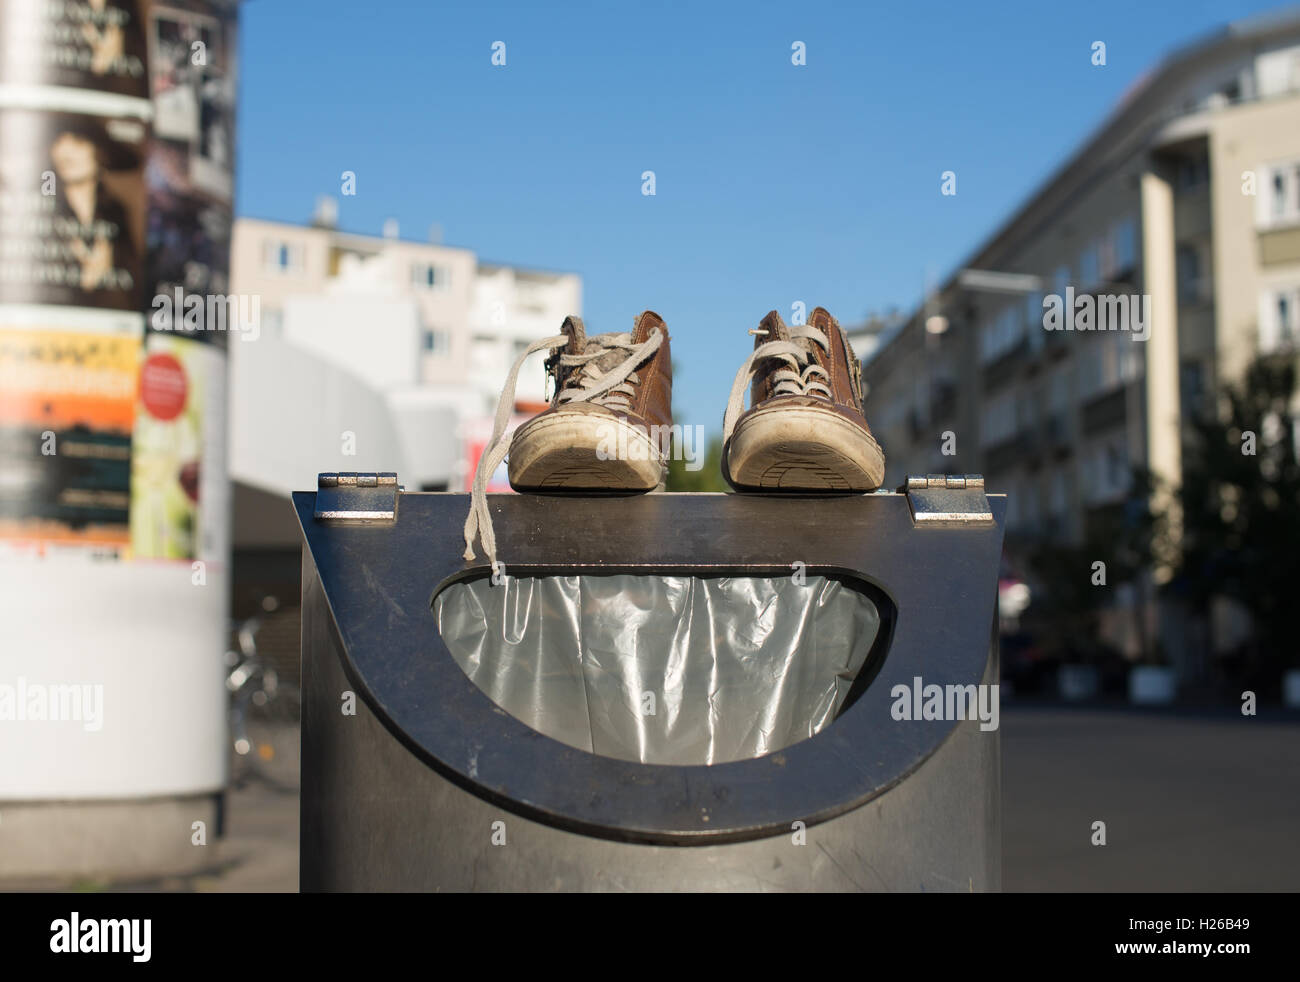 Chaussures sur une poubelle Photo Stock - Alamy